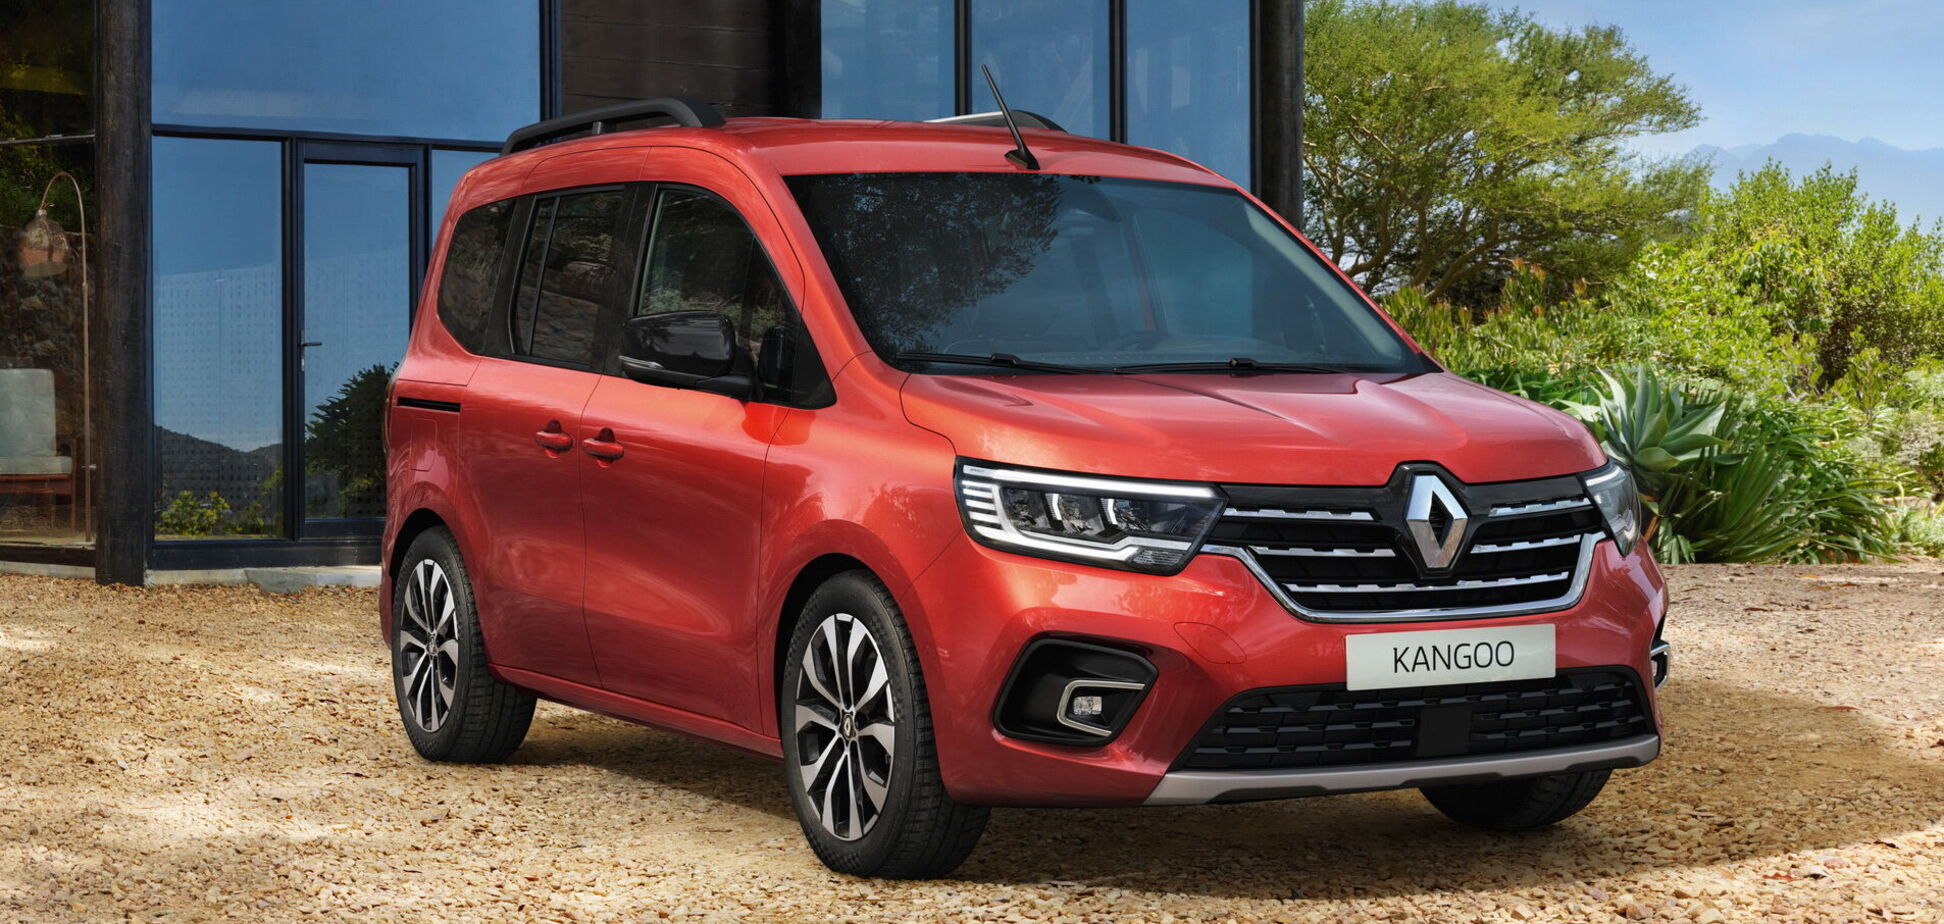 Renault презентовала новое поколение семейства Kangoo